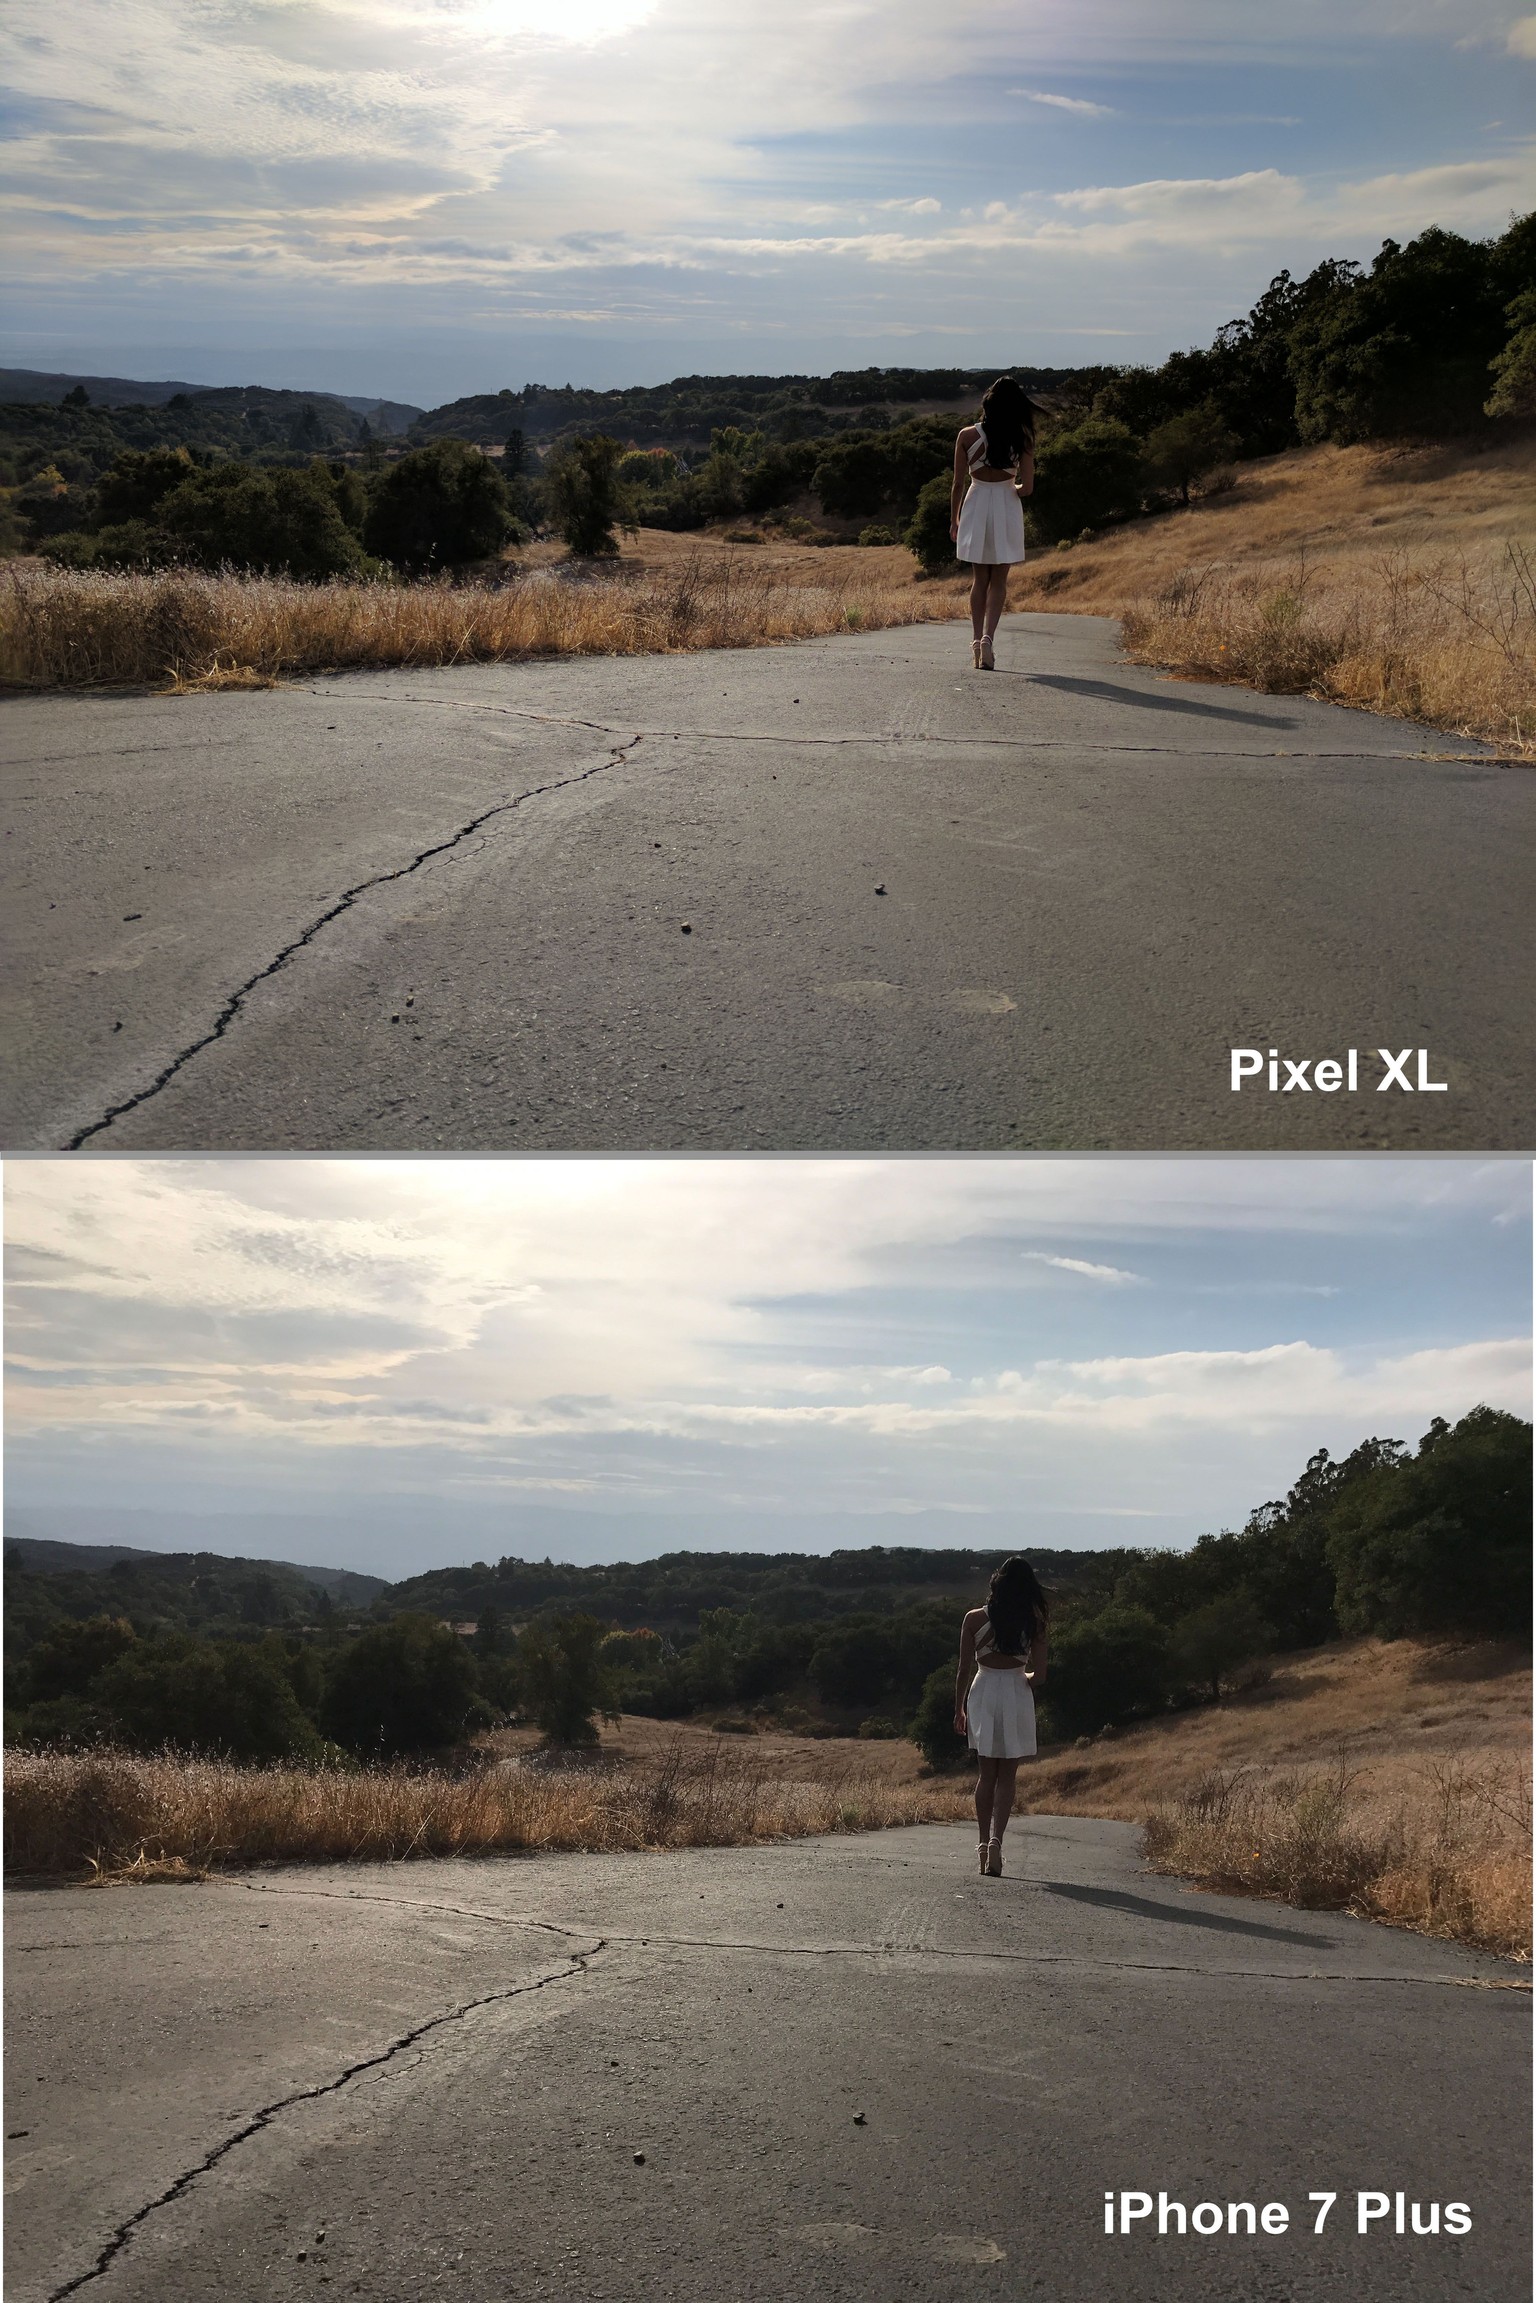 Beide Fotos wurden von der gleichen Position aus geschossen. Das Pixel hat einen besseren Weitwinkel, die Google-Kamera bringt also mehr Landschaft auf Foto.